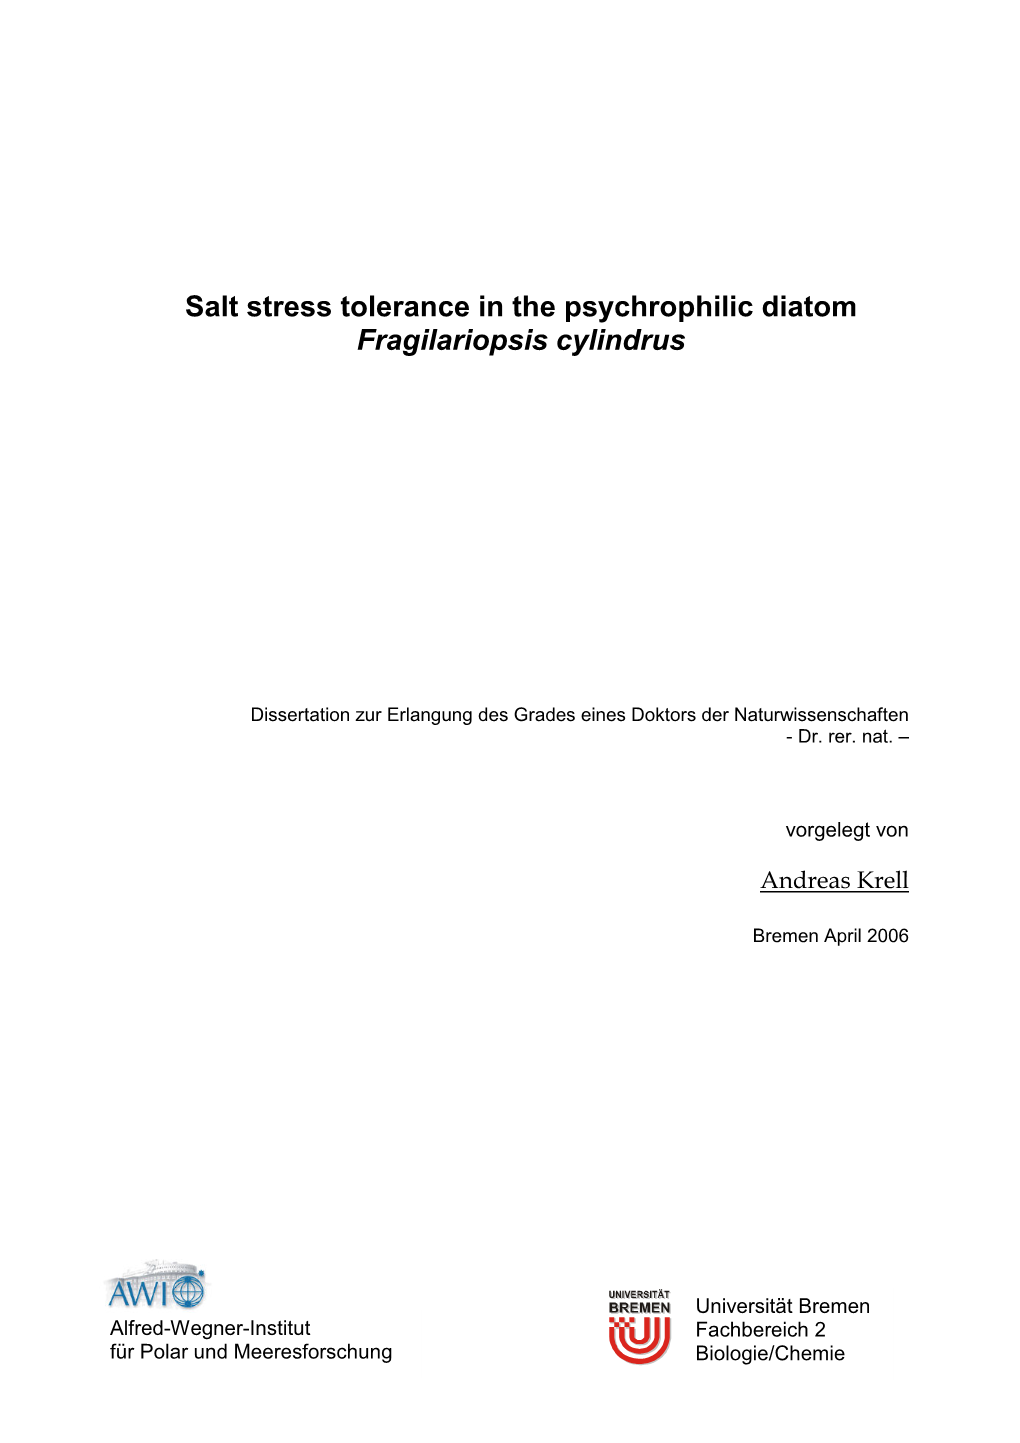 Salt Stress Tolerance in the Psychrophilic Diatom Fragilariopsis